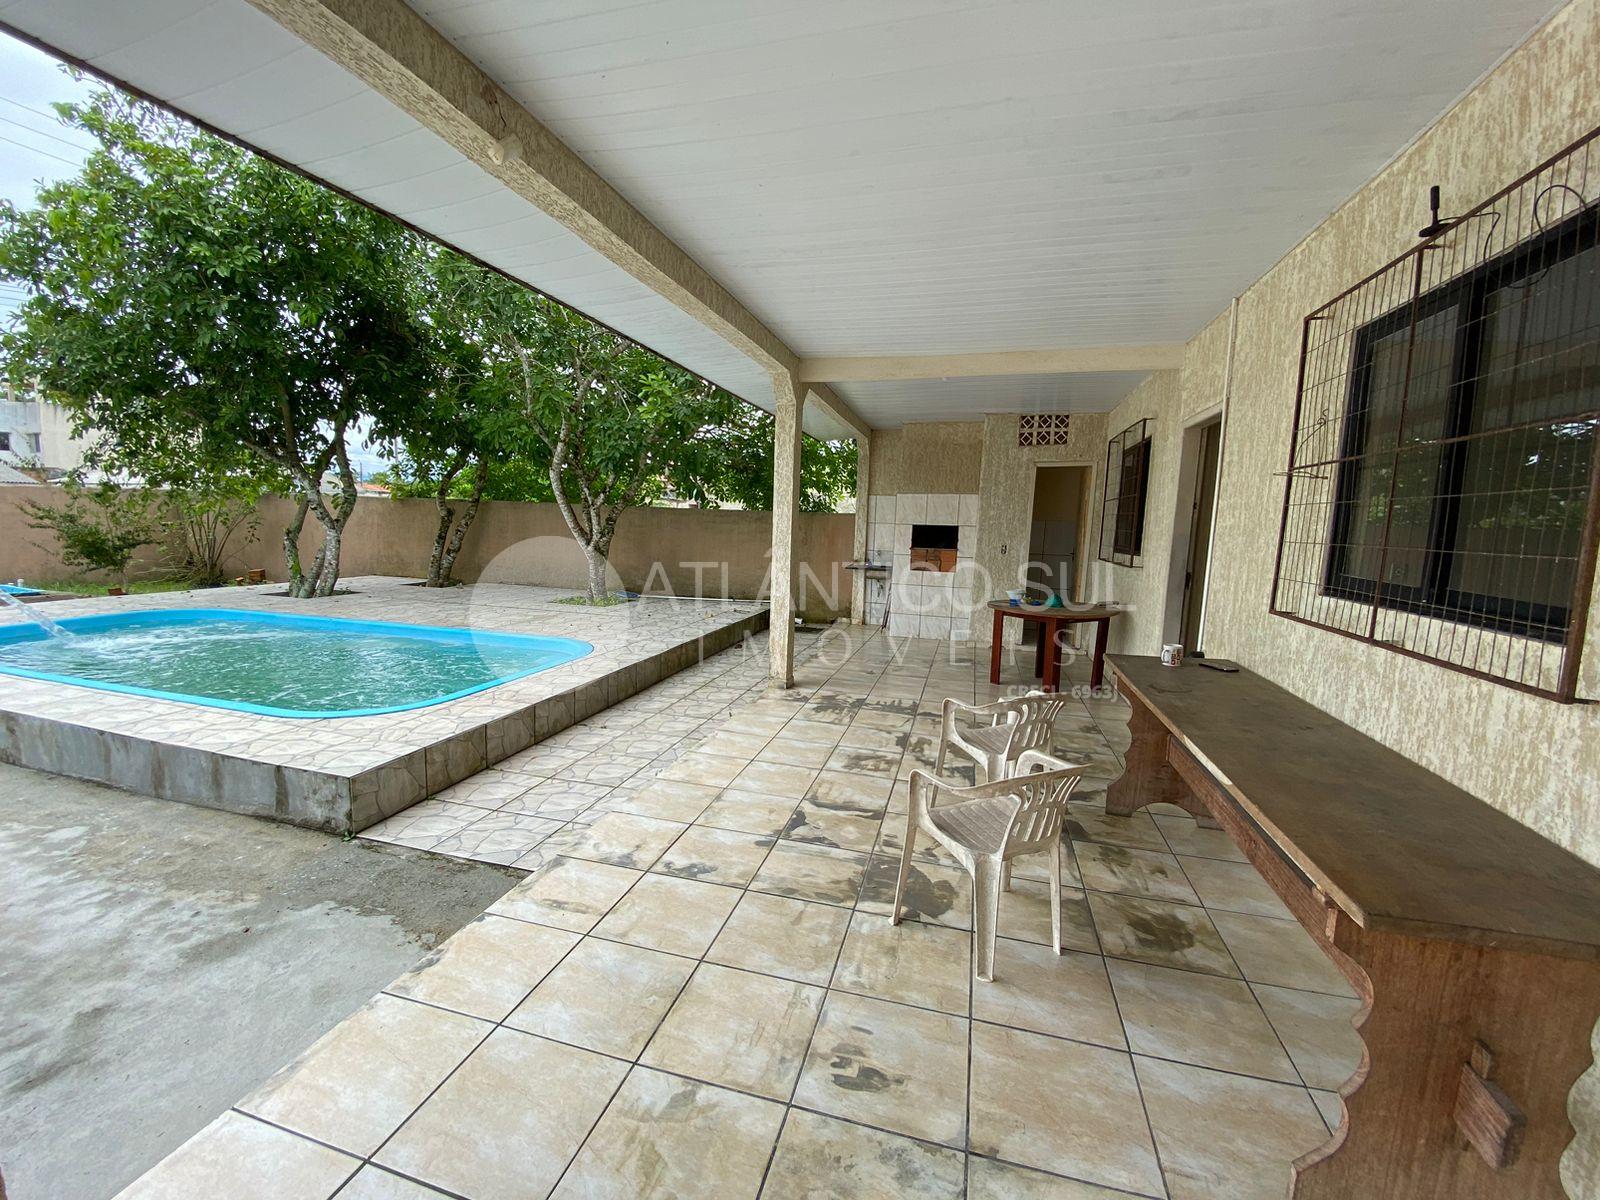 Casa à venda com piscina, Praia de Leste, PONTAL DO PARANA - PR